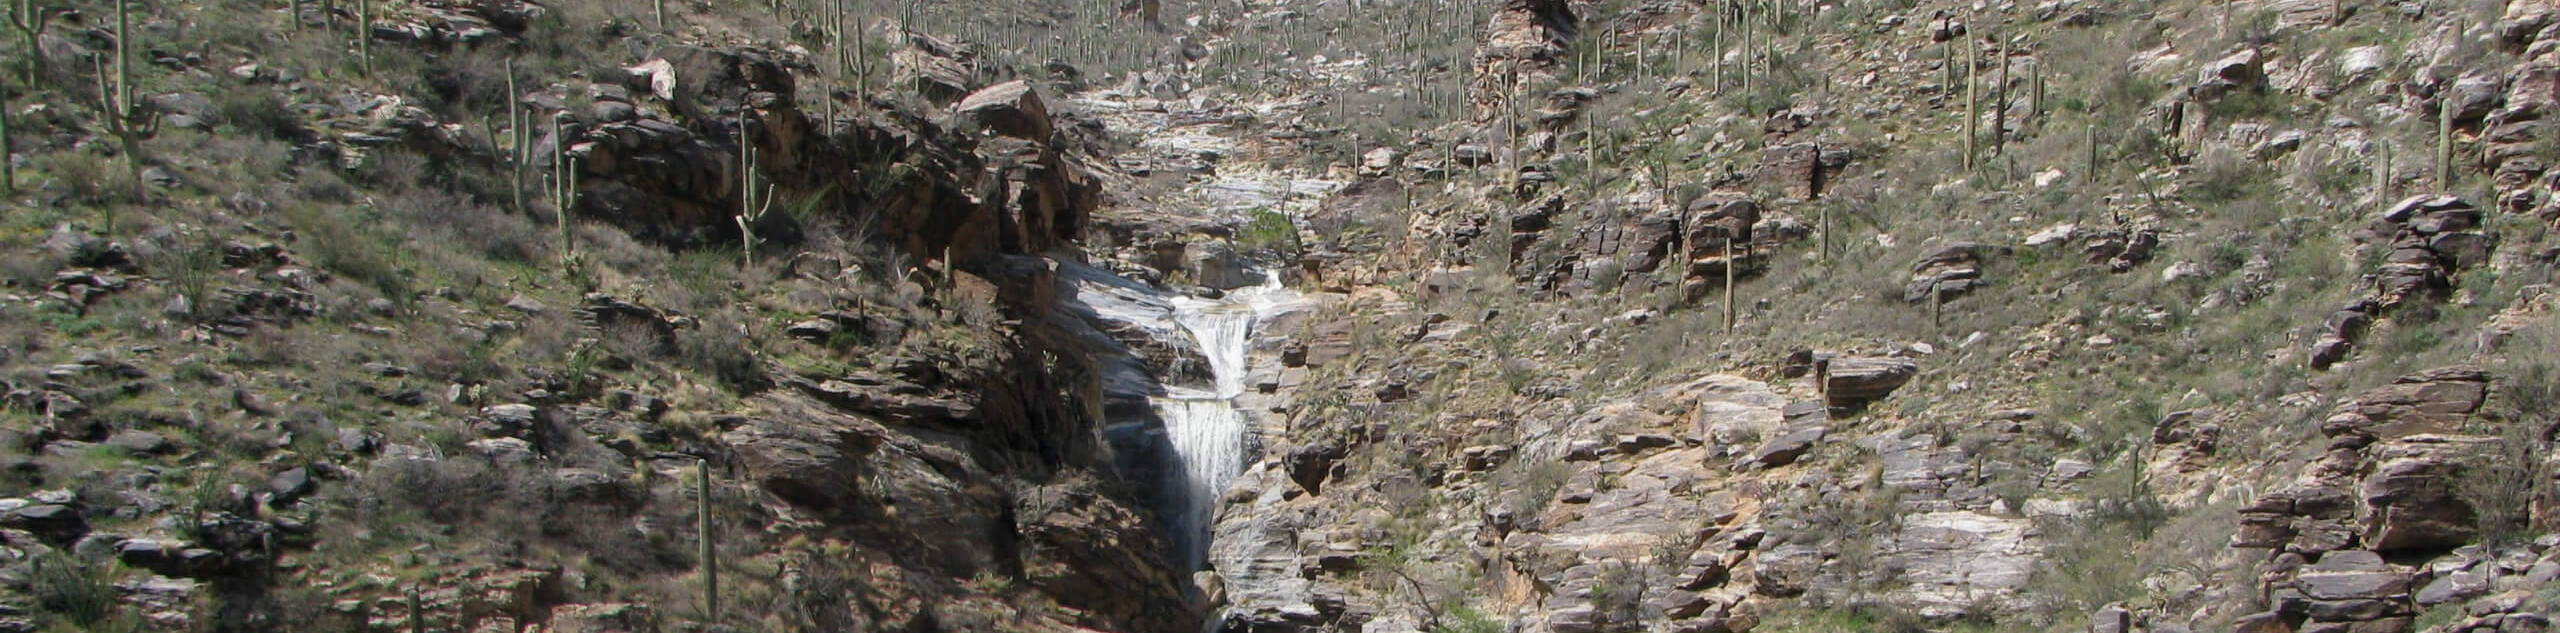 Seven Falls via Bear Canyon Road